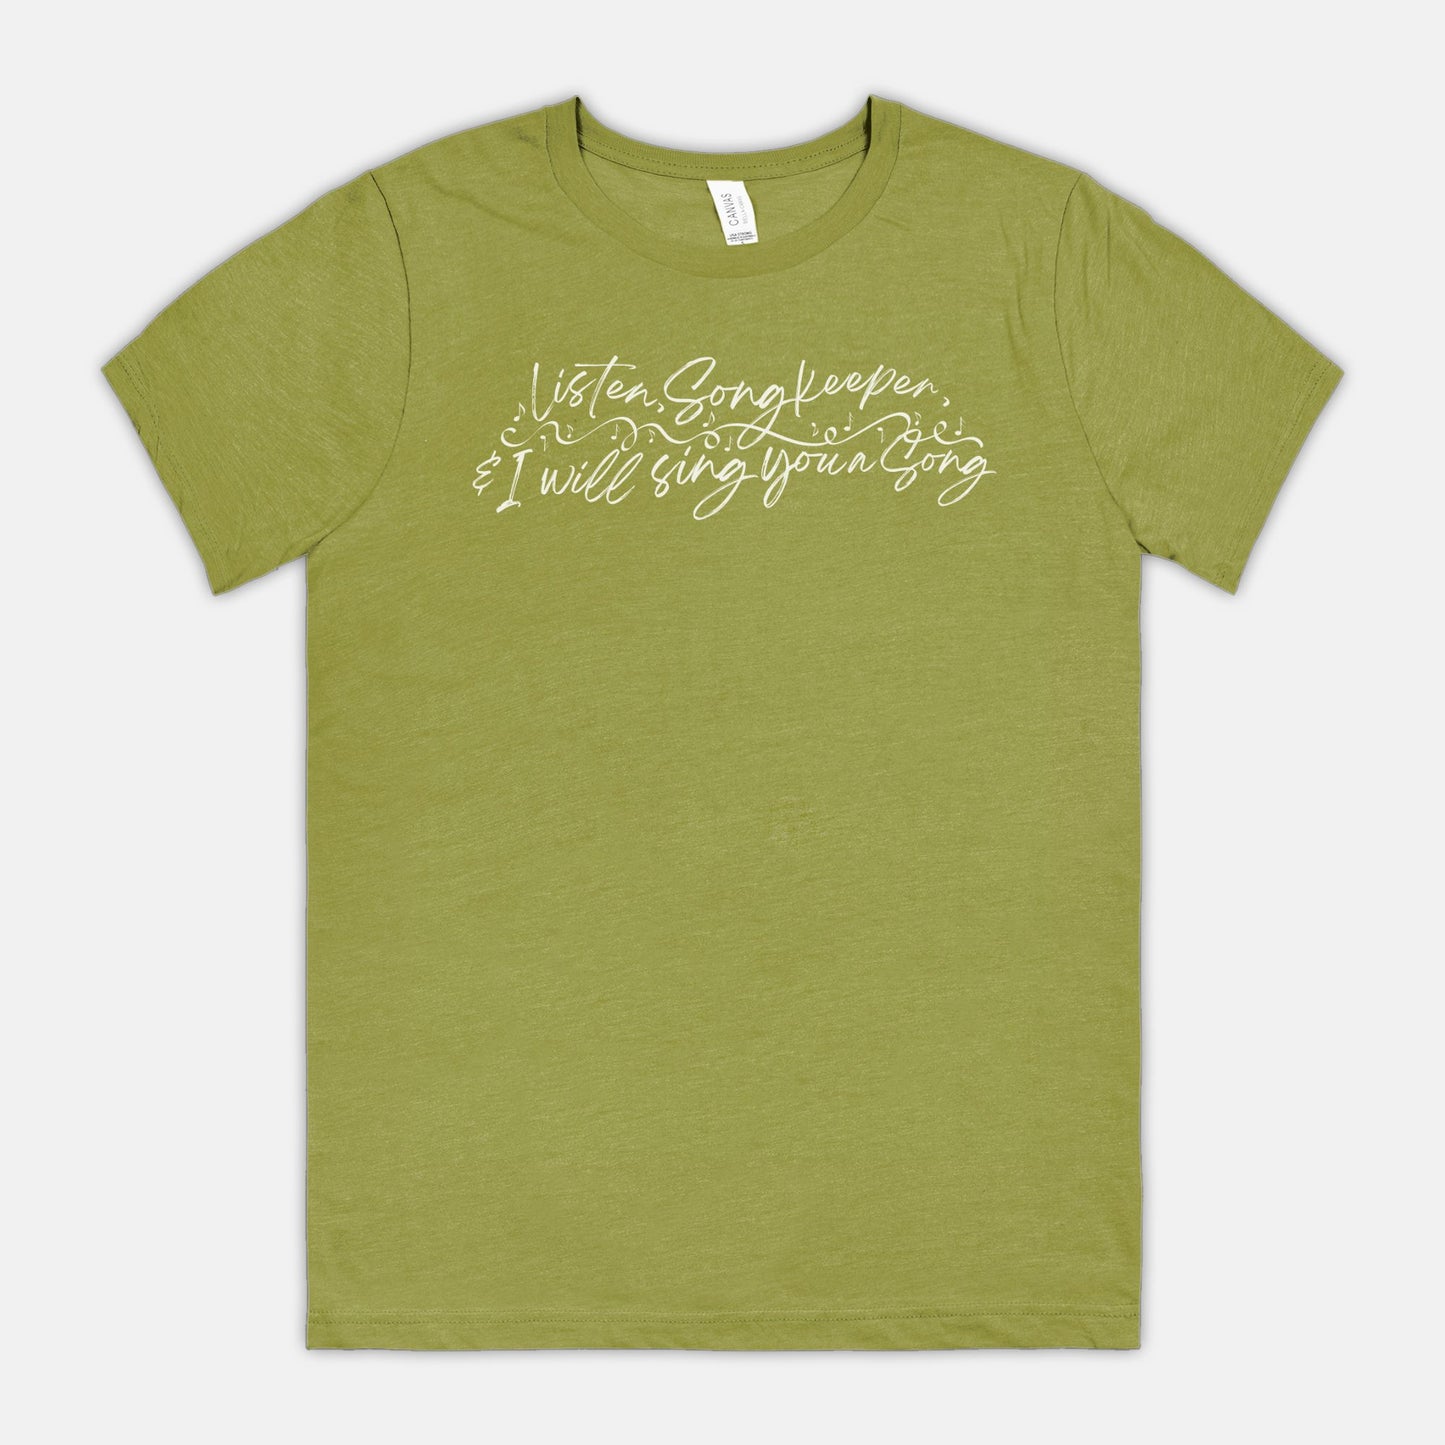 "Listen Songkeeper" T-shirt